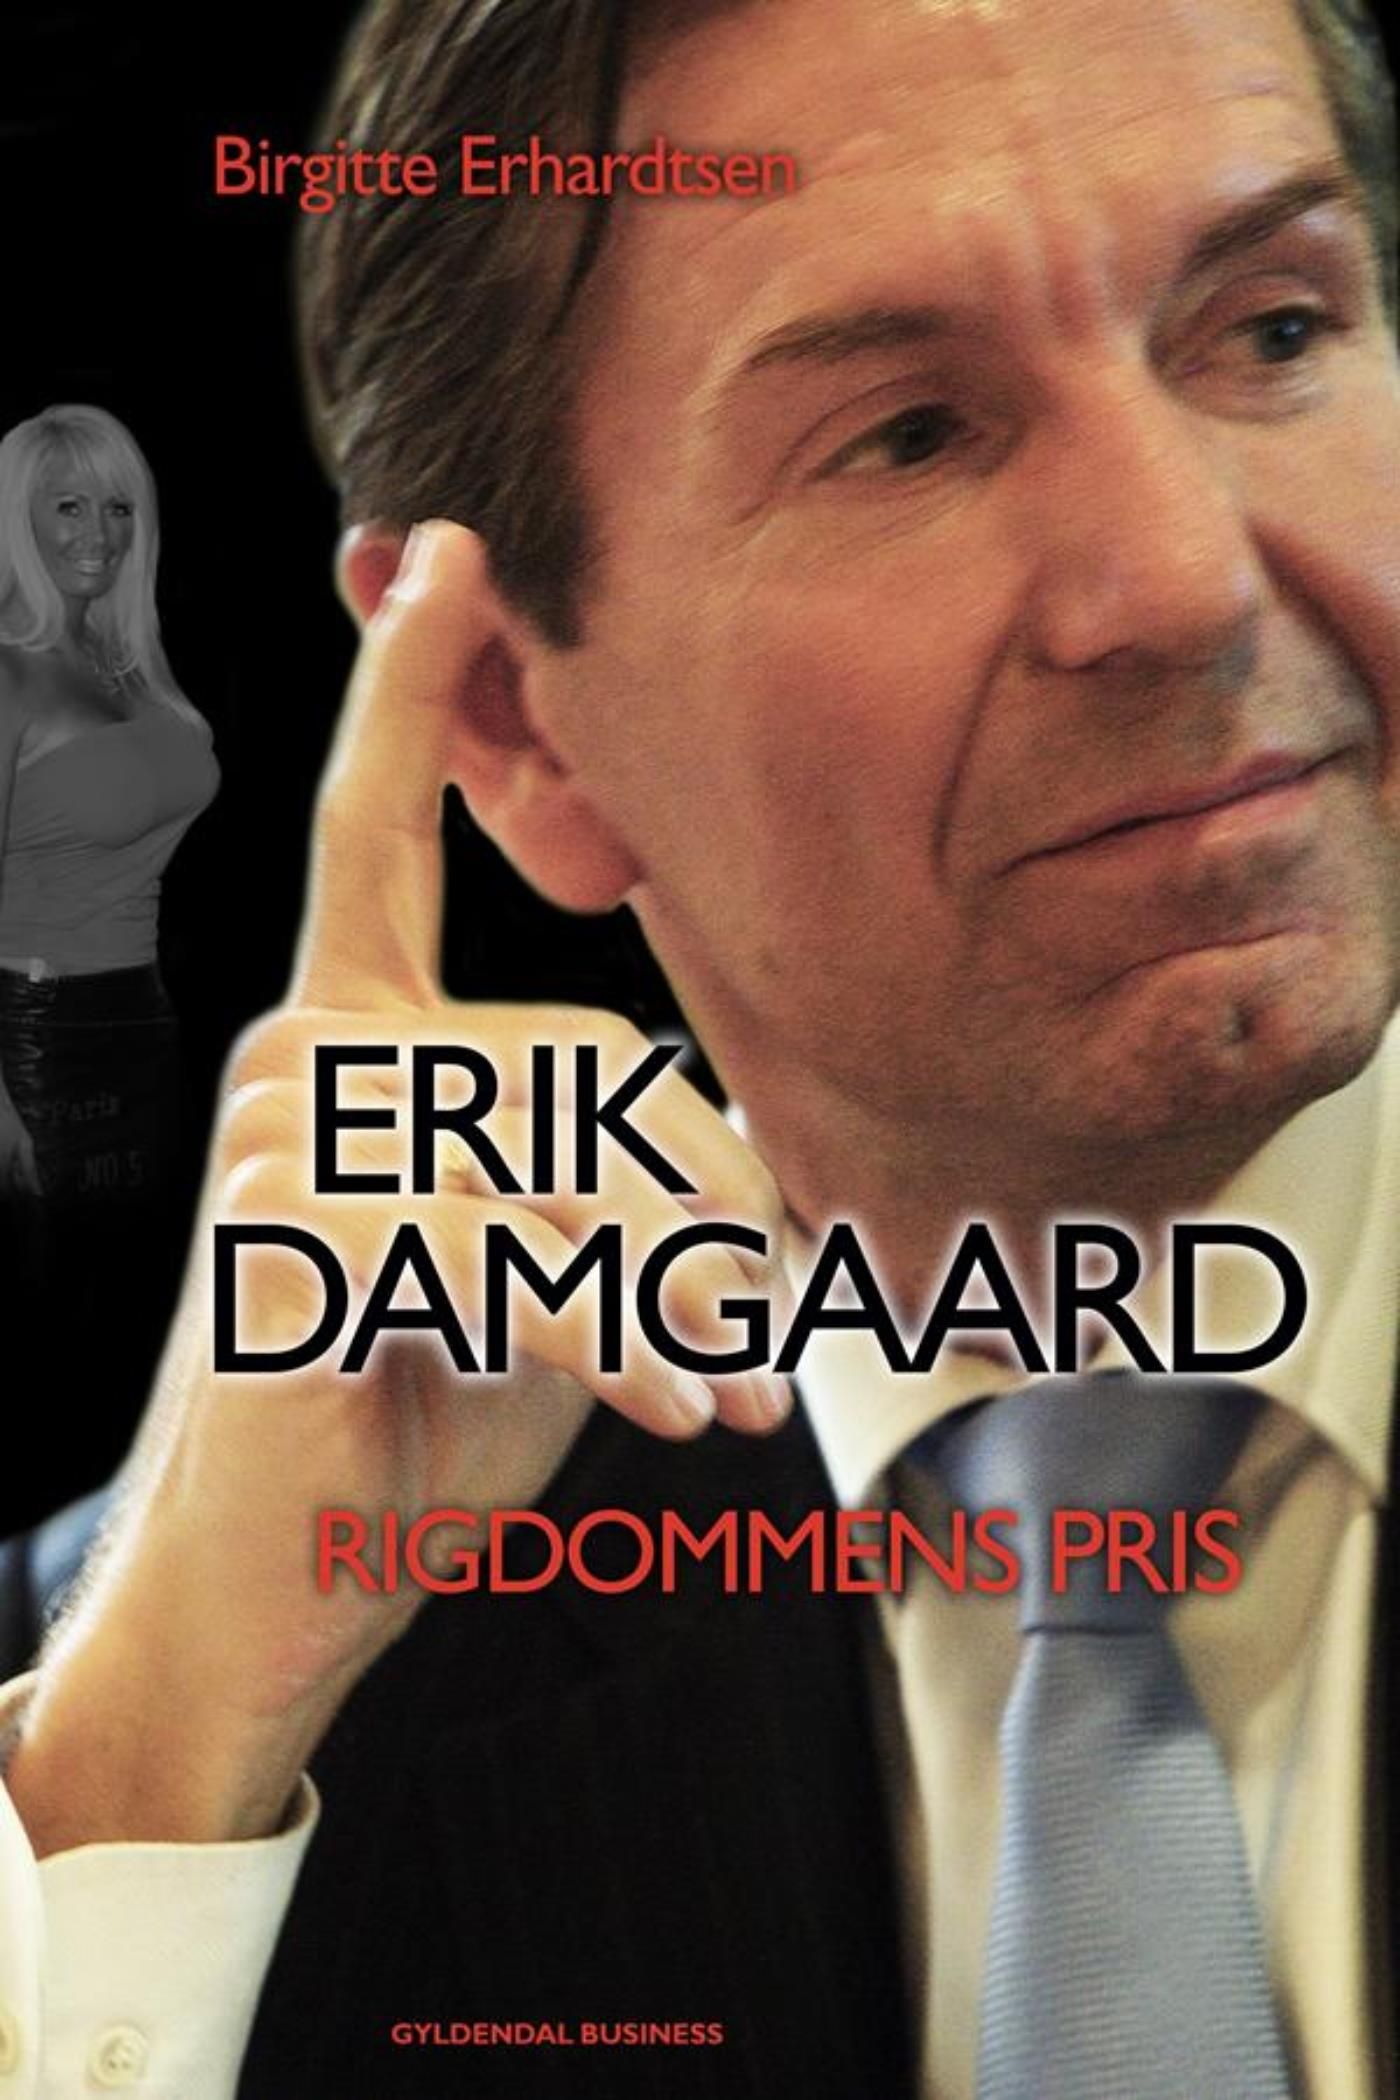 Erik Damgaard, e-bok av Birgitte Erhardtsen